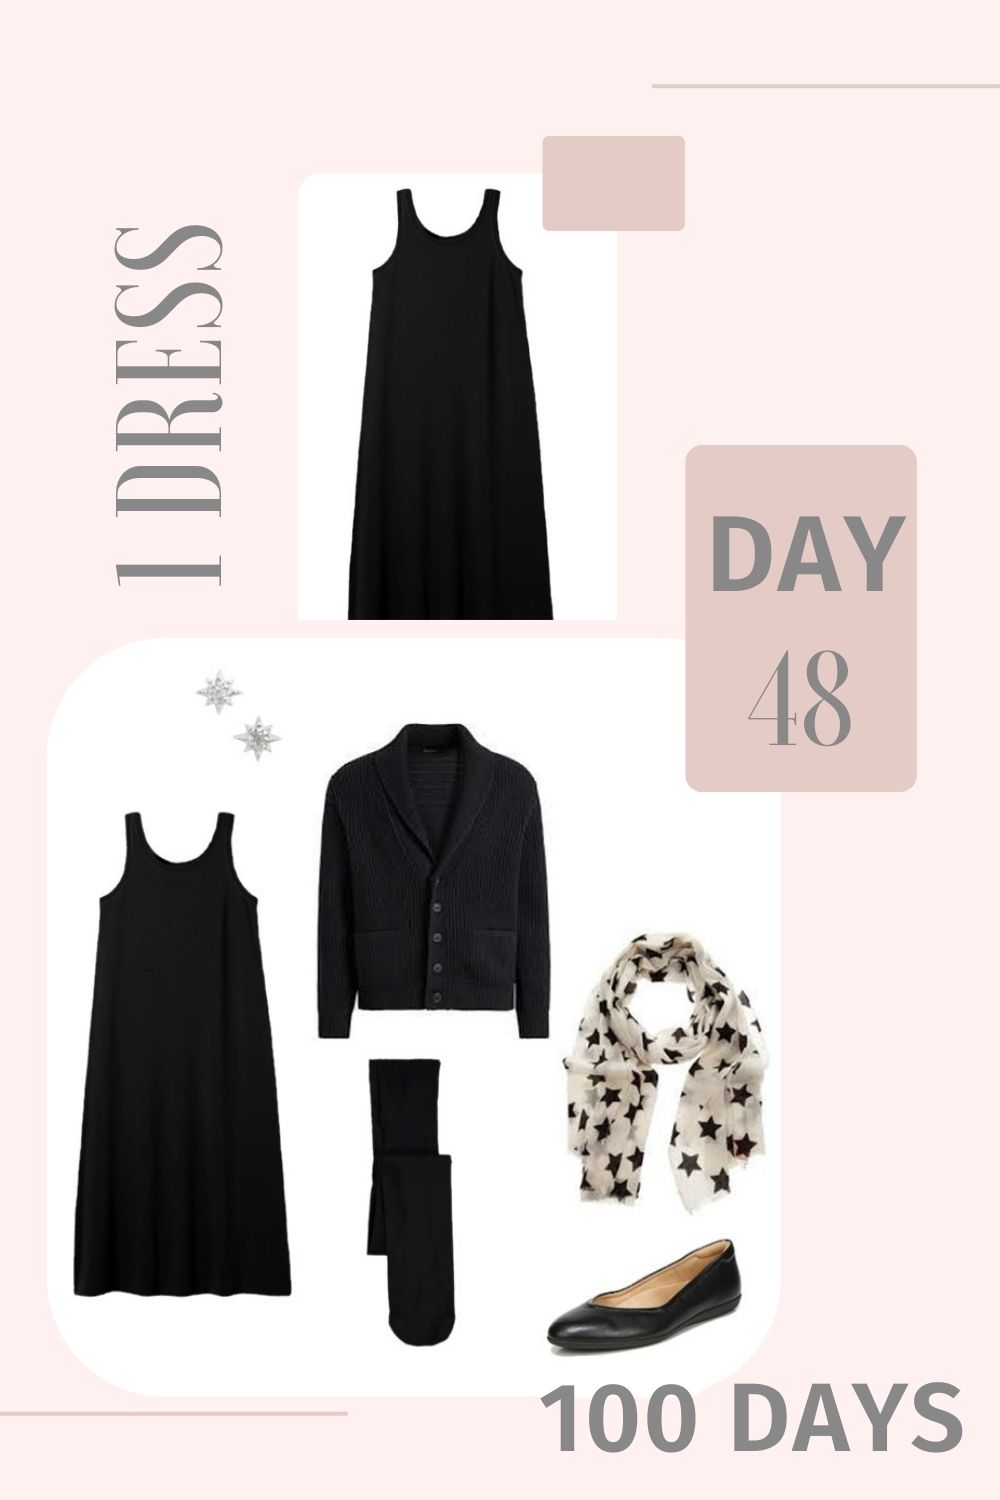 1 Dress 100 Days - Day 48